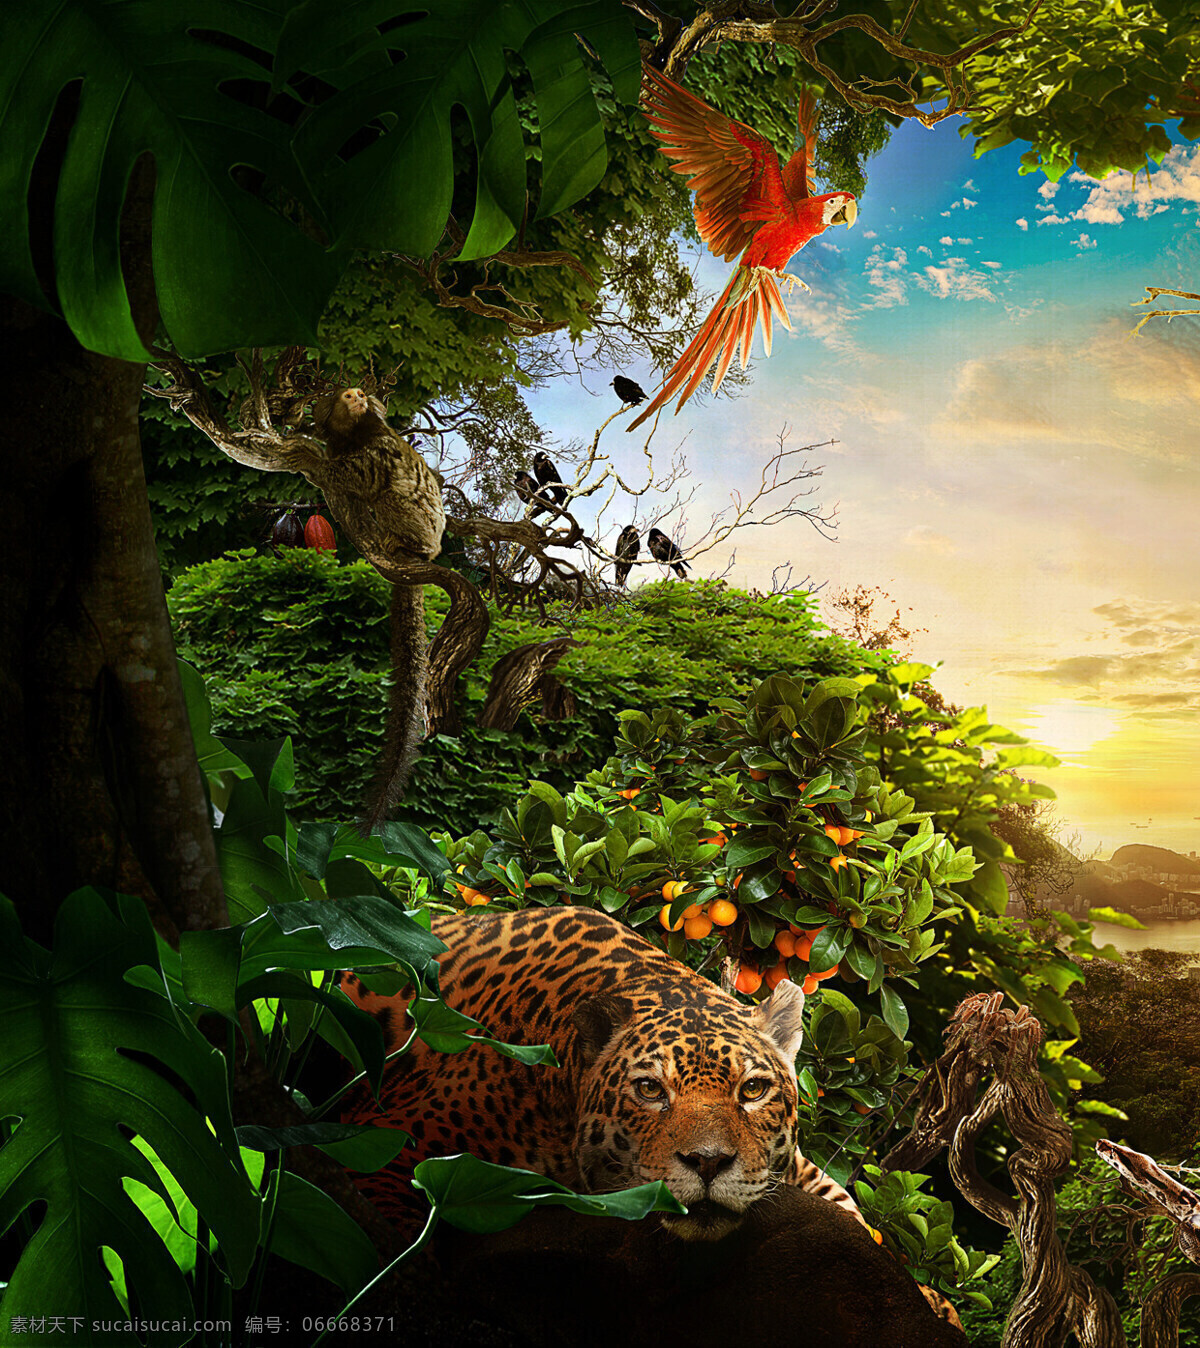 梦幻 绿色 森林 老虎 背景 小清新 日出 阳光 绿色森林 红色鹦鹉 保护野生动物